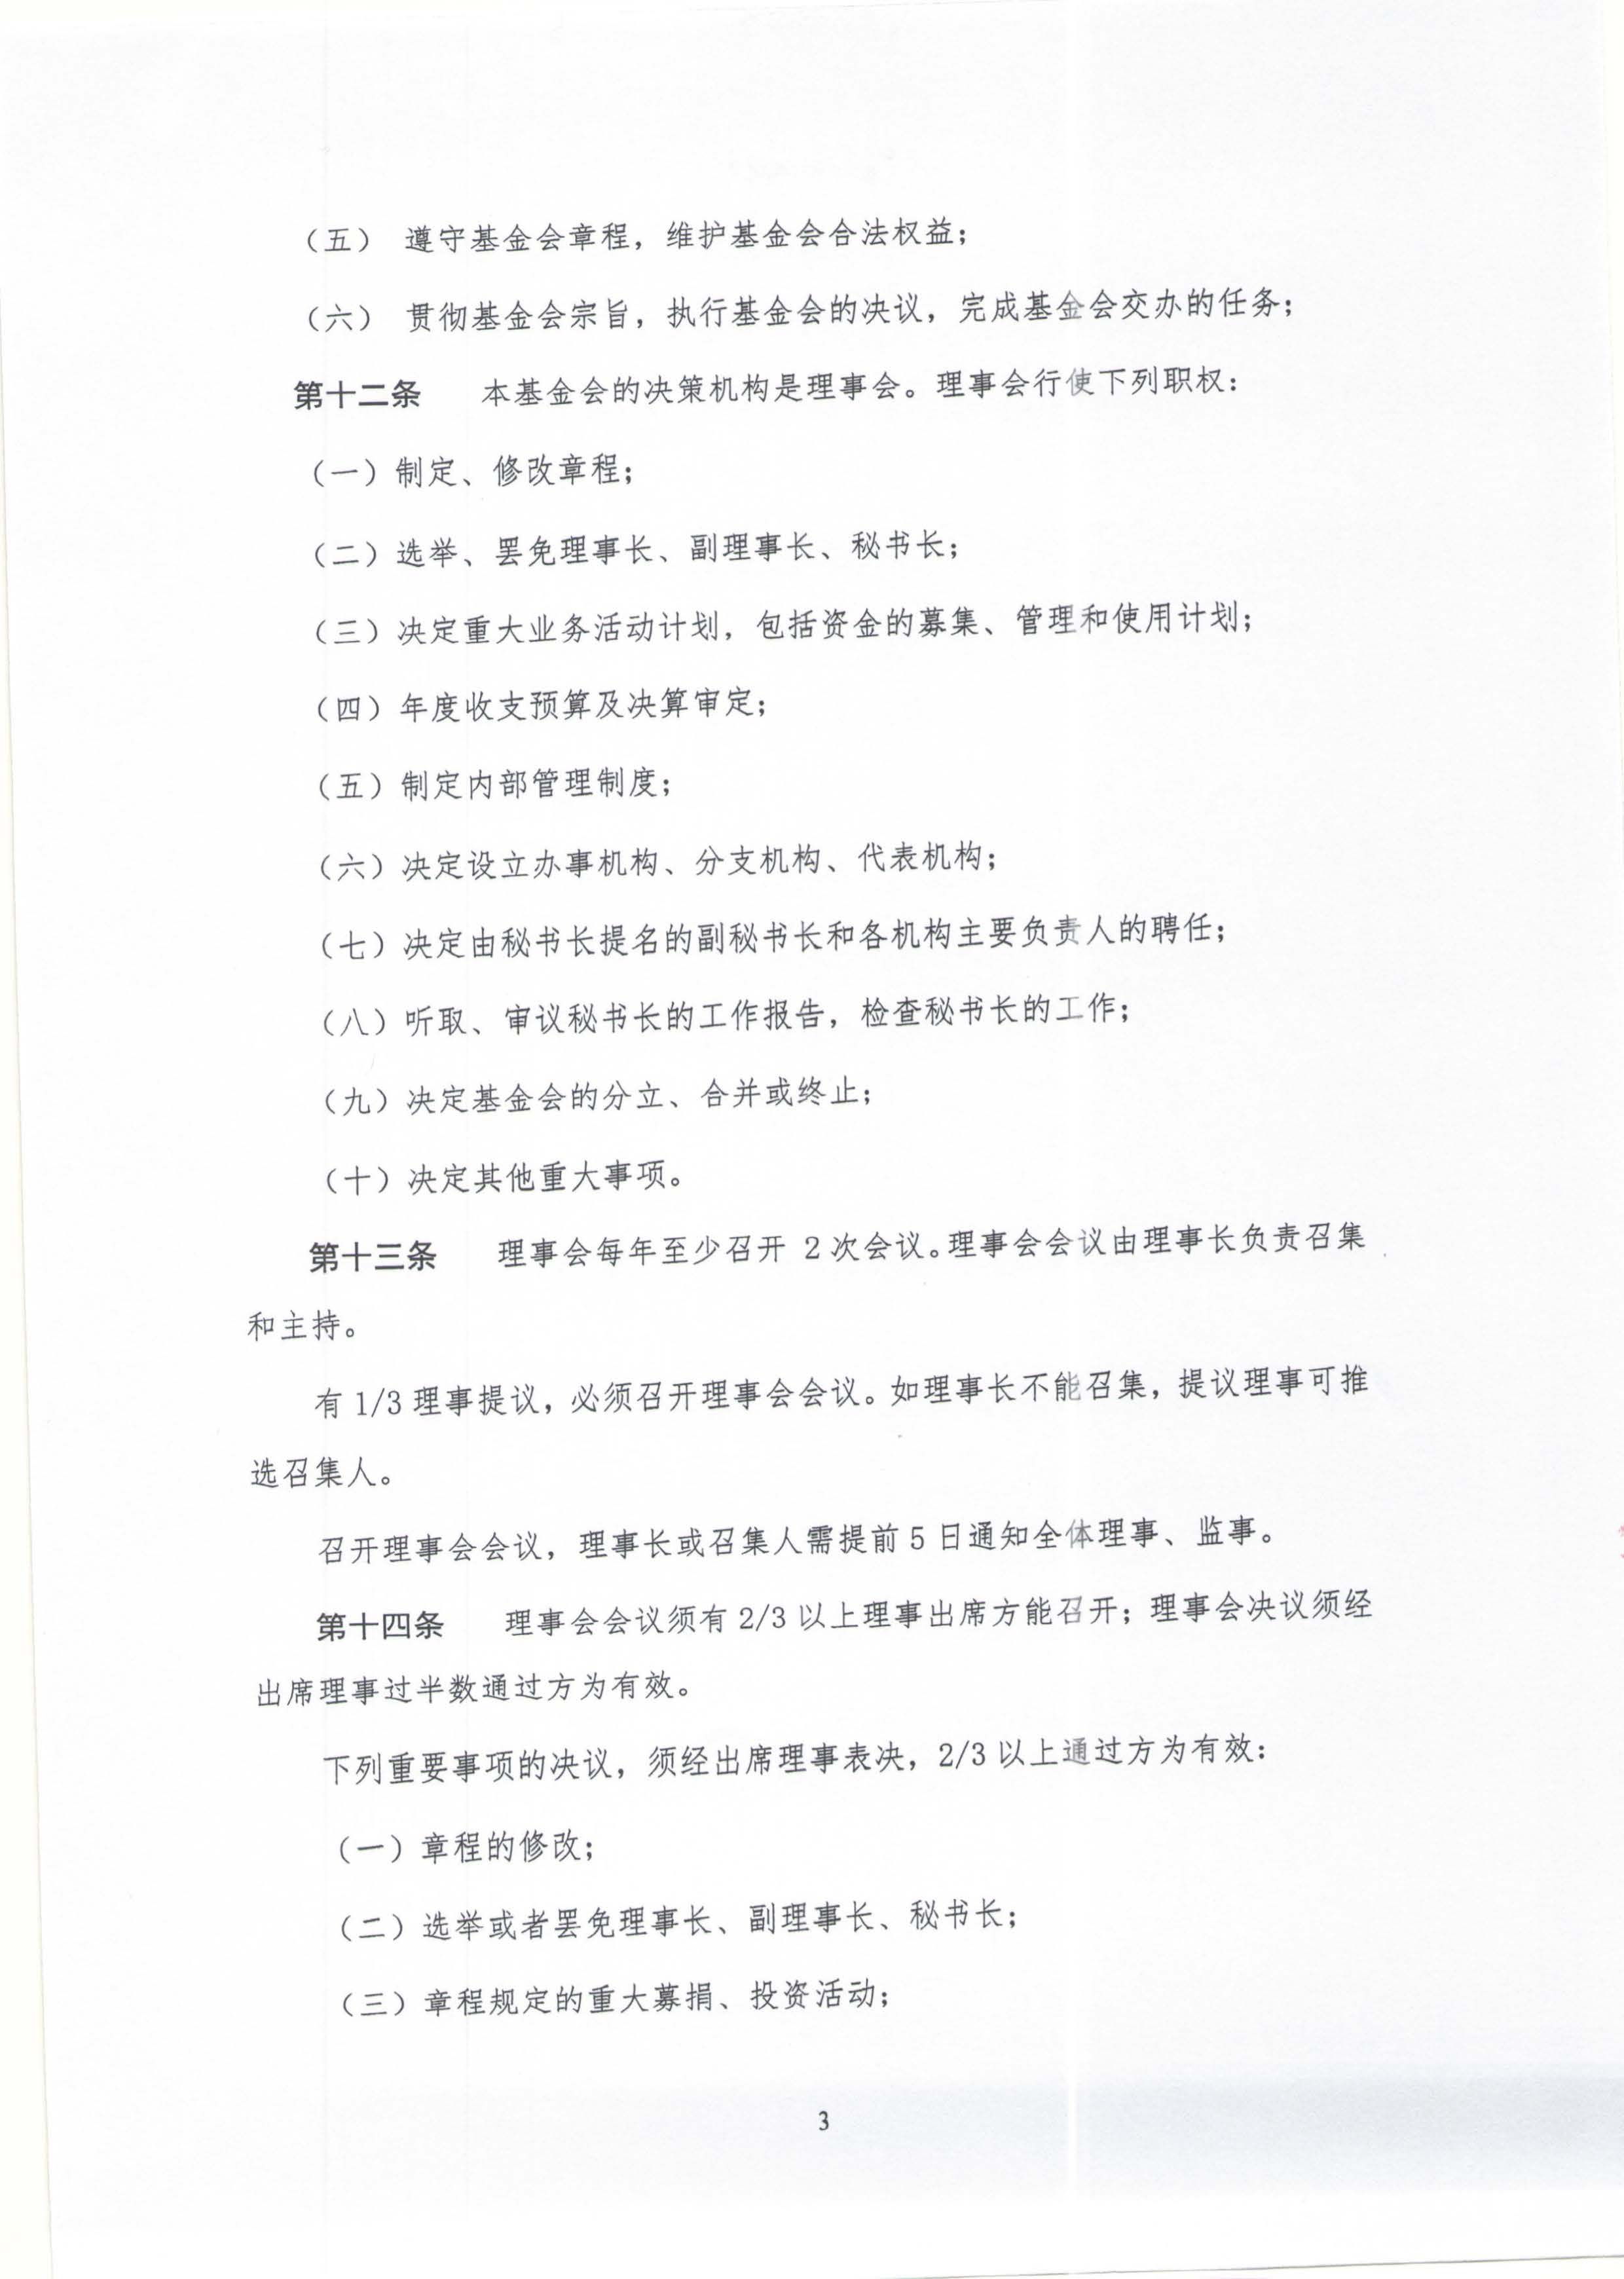 章程-北京鼎医公益基金会_页面_03